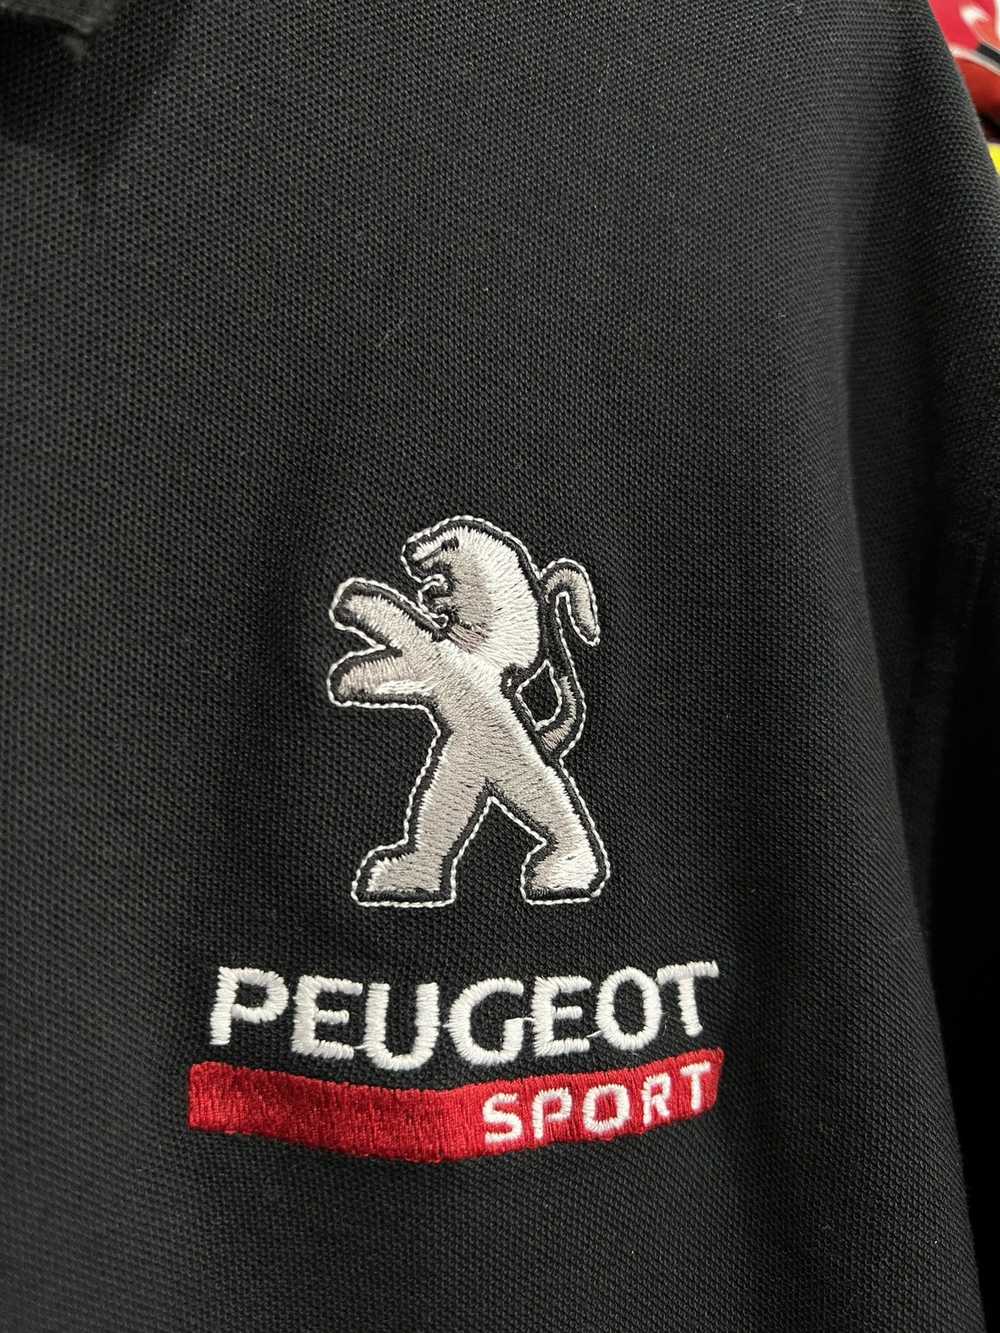 Racing × Streetwear × Vintage Racing Peugeot Spor… - image 4